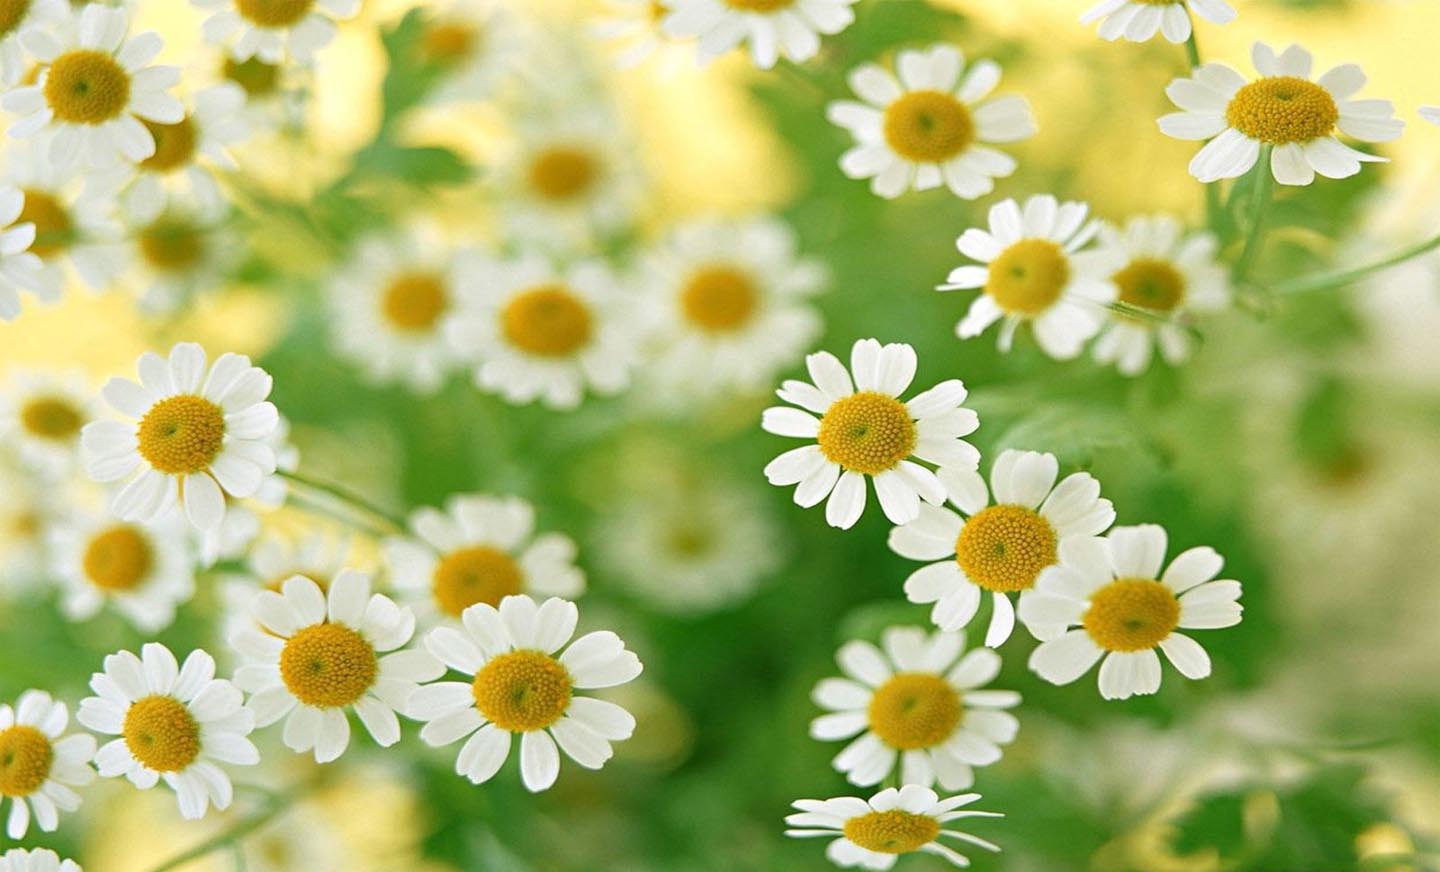 Hoa dại: Hãy khám phá sự đơn giản và giản dị của loại hoa dại. Những bông hoa nhỏ bé và mỏng manh này với nhiều sắc màu khác nhau sẽ mang đến cho bạn cảm giác bình yên và tĩnh lặng giữa những cánh đồng mênh mông.